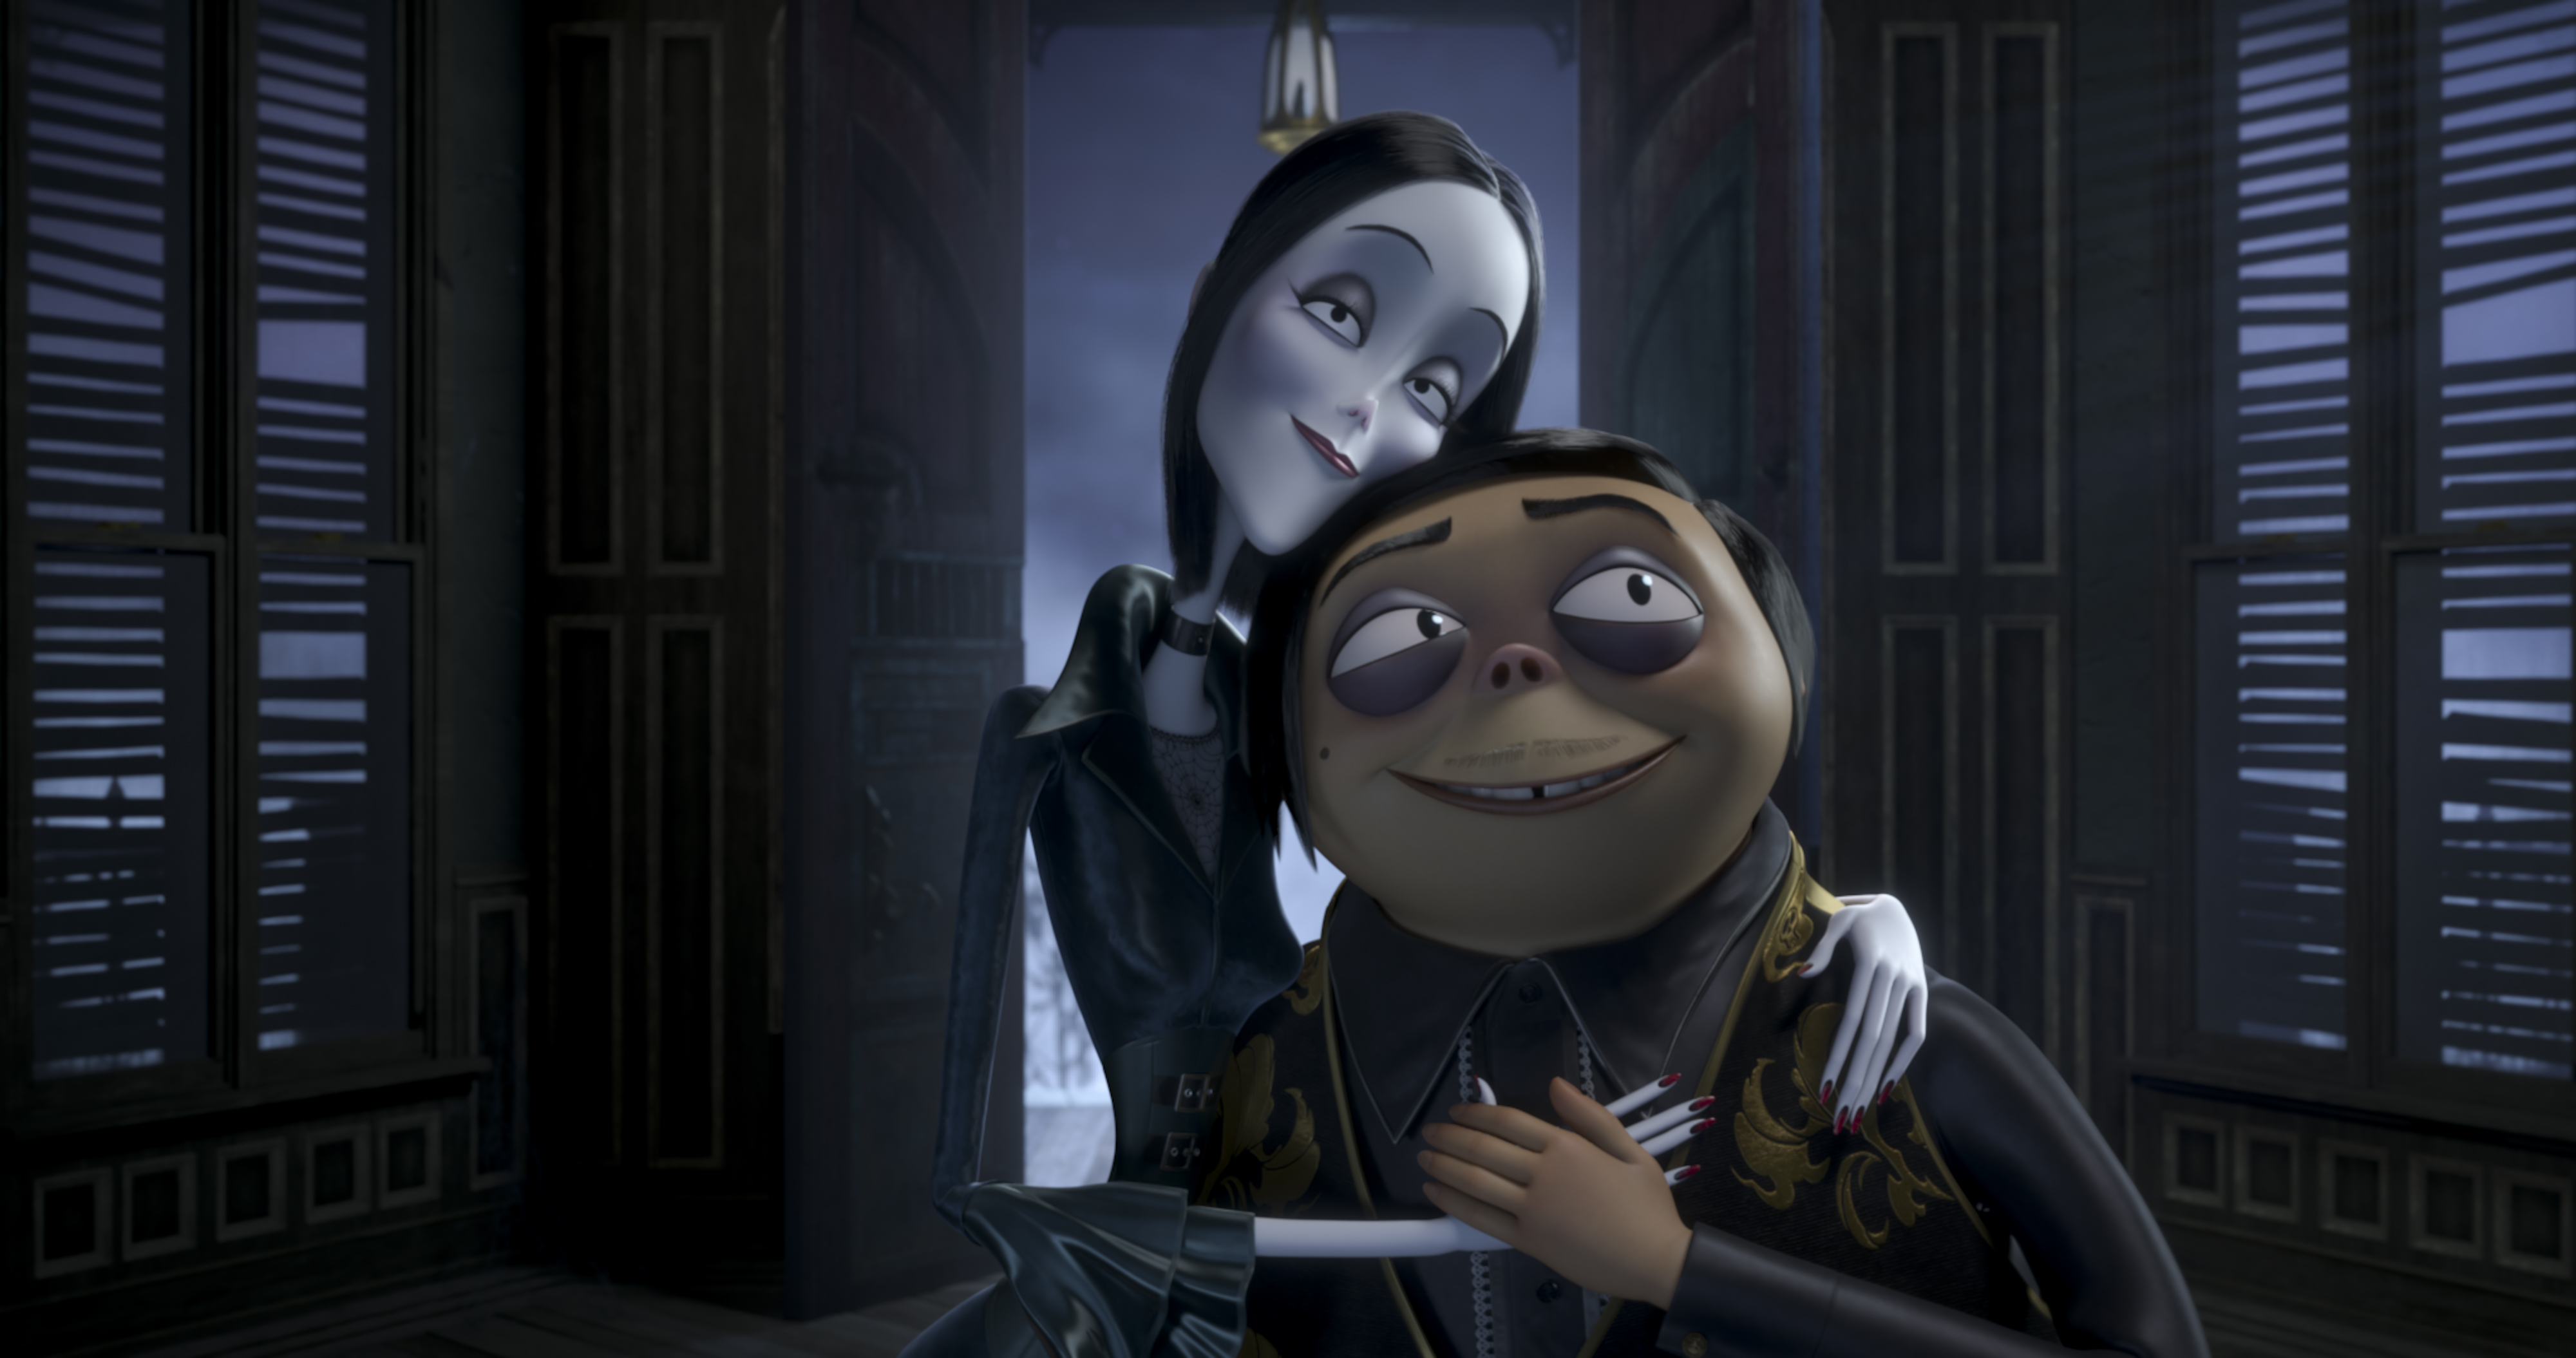 Prime foto e character poster per La Famiglia Addams con le voci di Virginia Raffaele, Loredana Bertè e